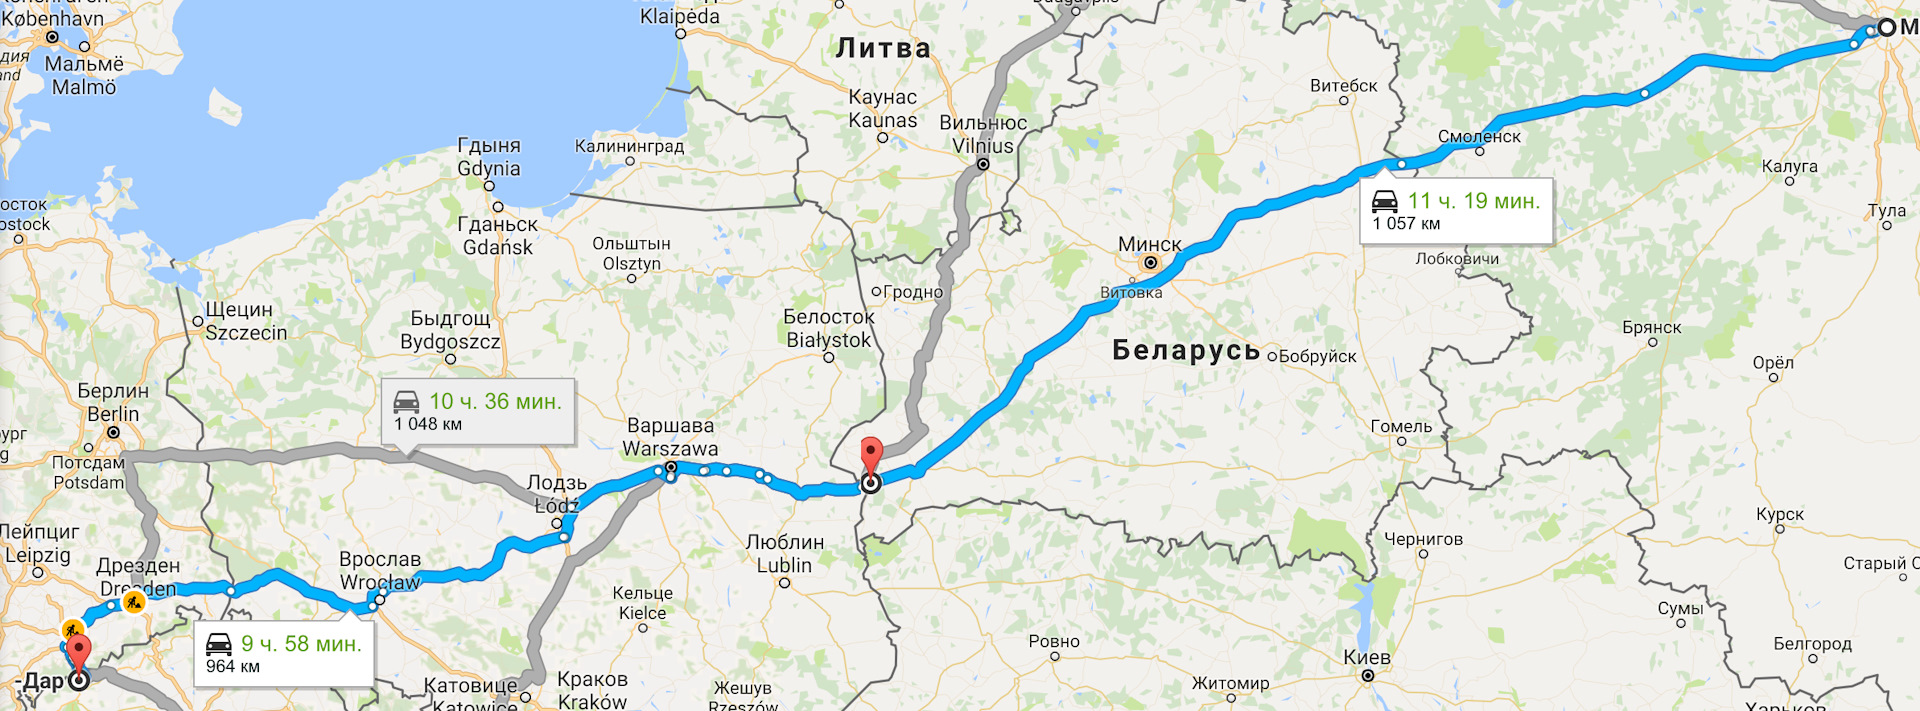 Как можно добраться до калининграда. Белгород и Калининград на карте. Белгород Калининград. Белгород Калининград расстояние на машине. Калининград от Белгорода.